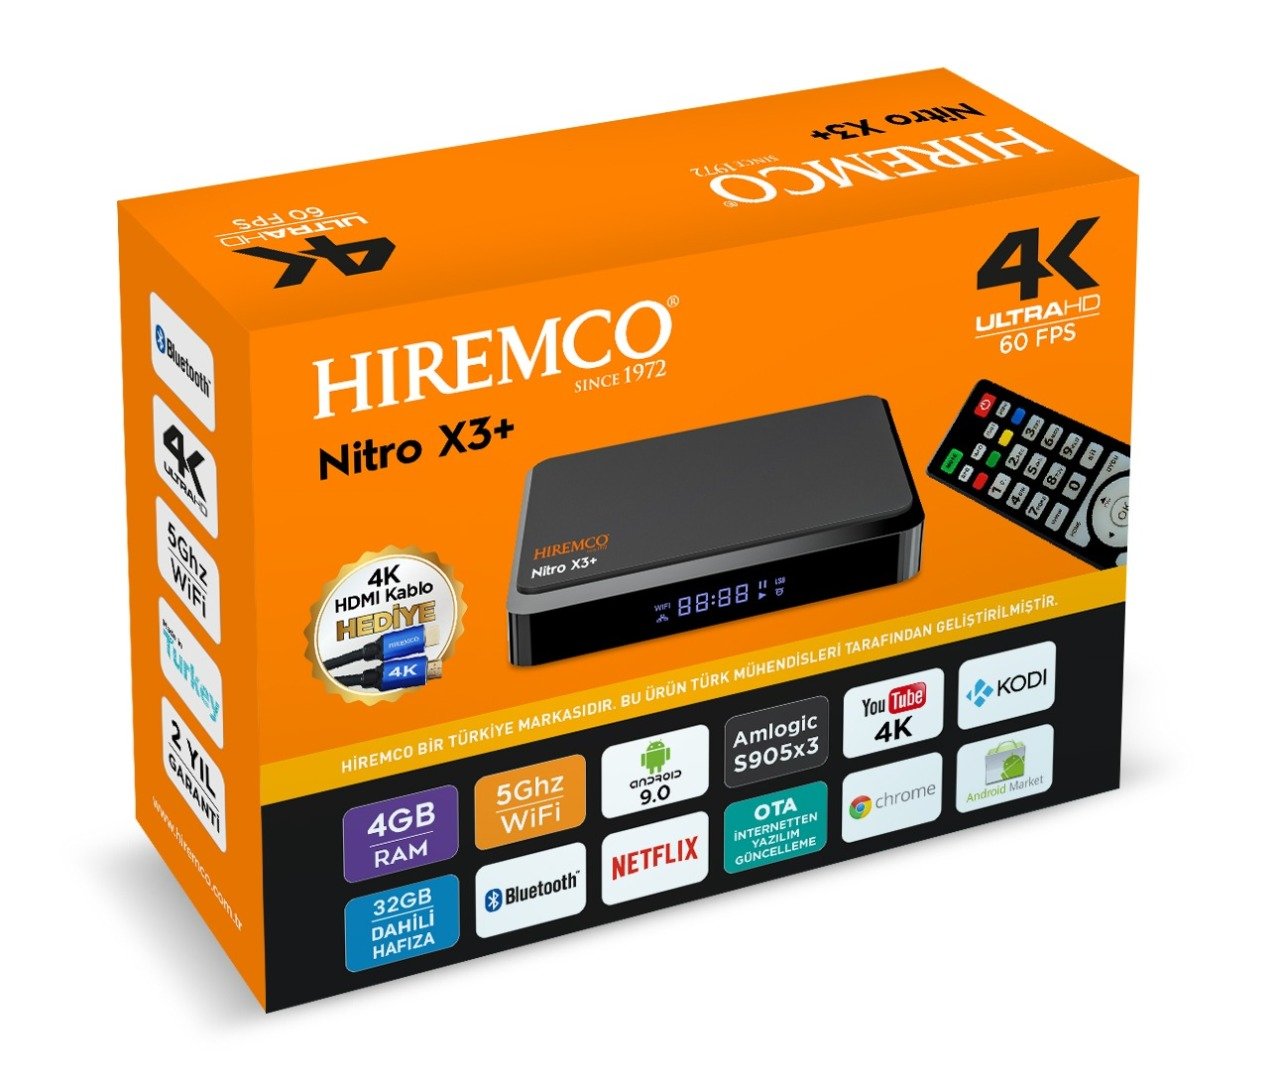 Hiremco Nitro X3+ Android 4K Tv Box 4Gb Ram 32Gb Hafıza